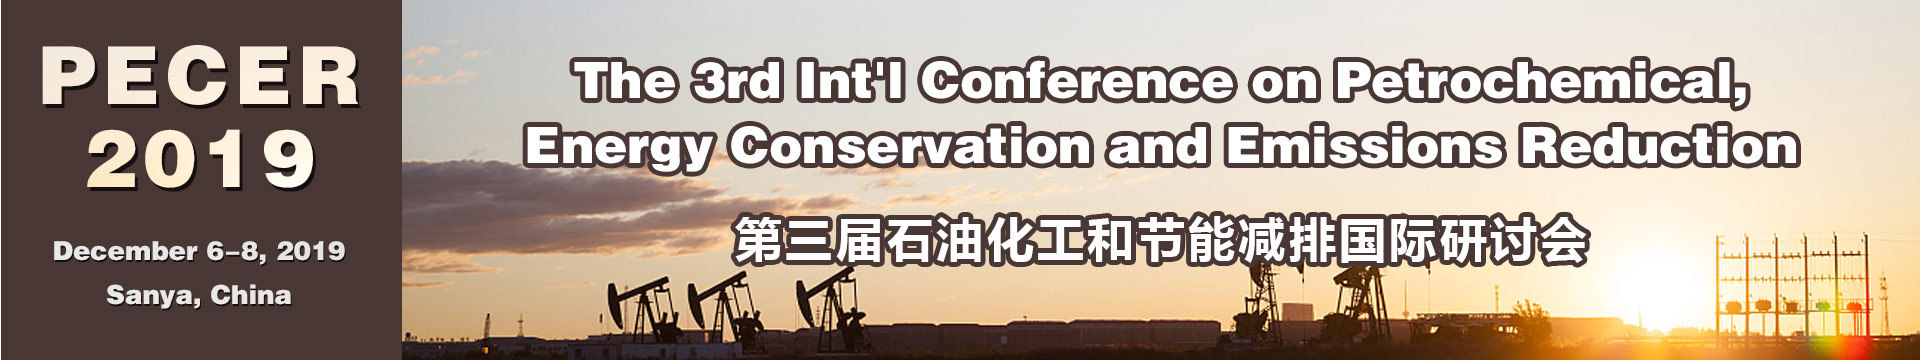 第三届石油化工和节能减排国际研讨会(PECER 2019)